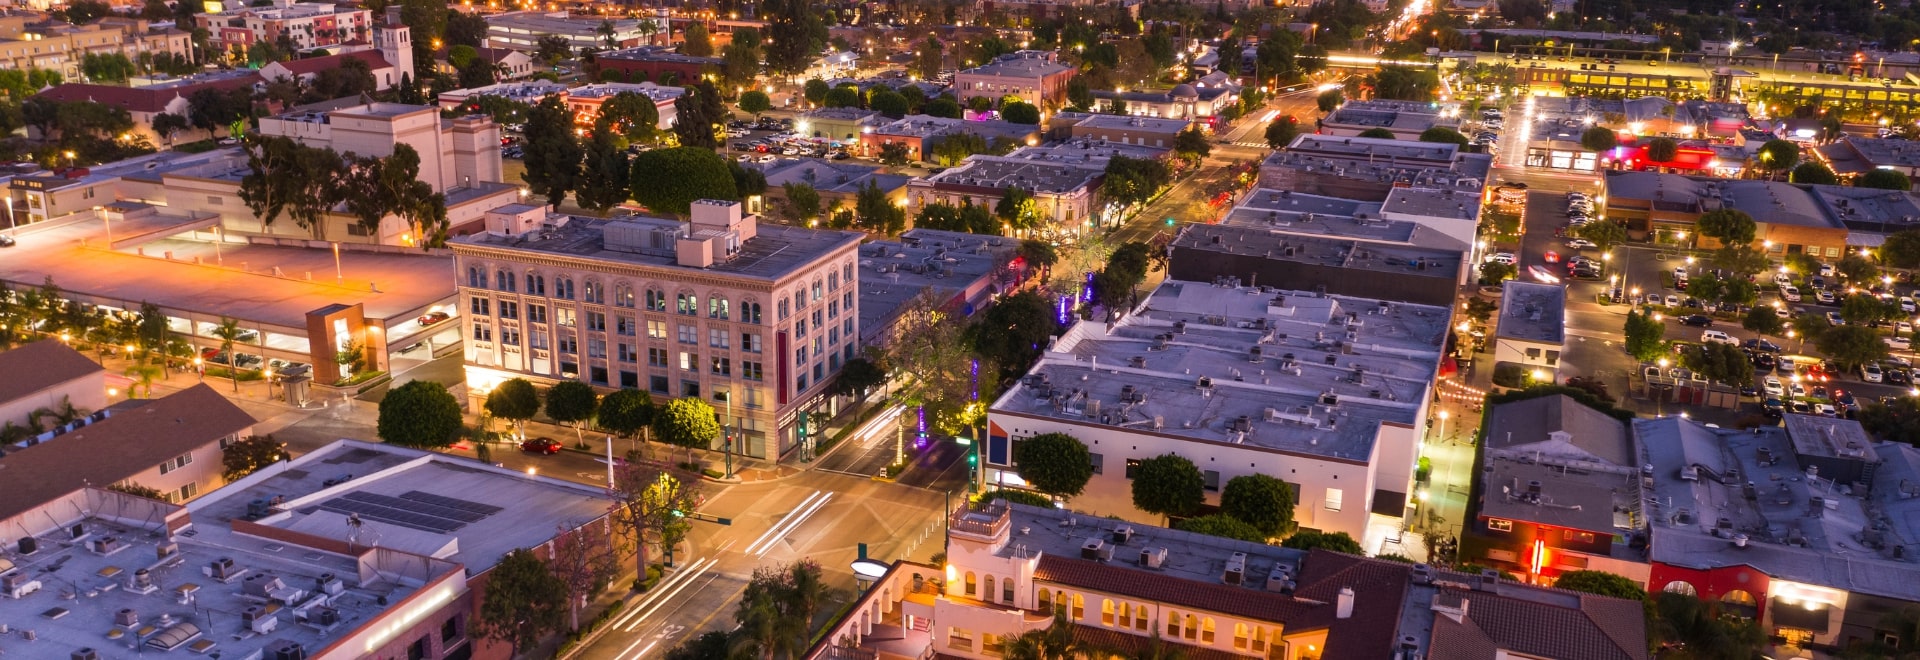 City view of Fullerton California